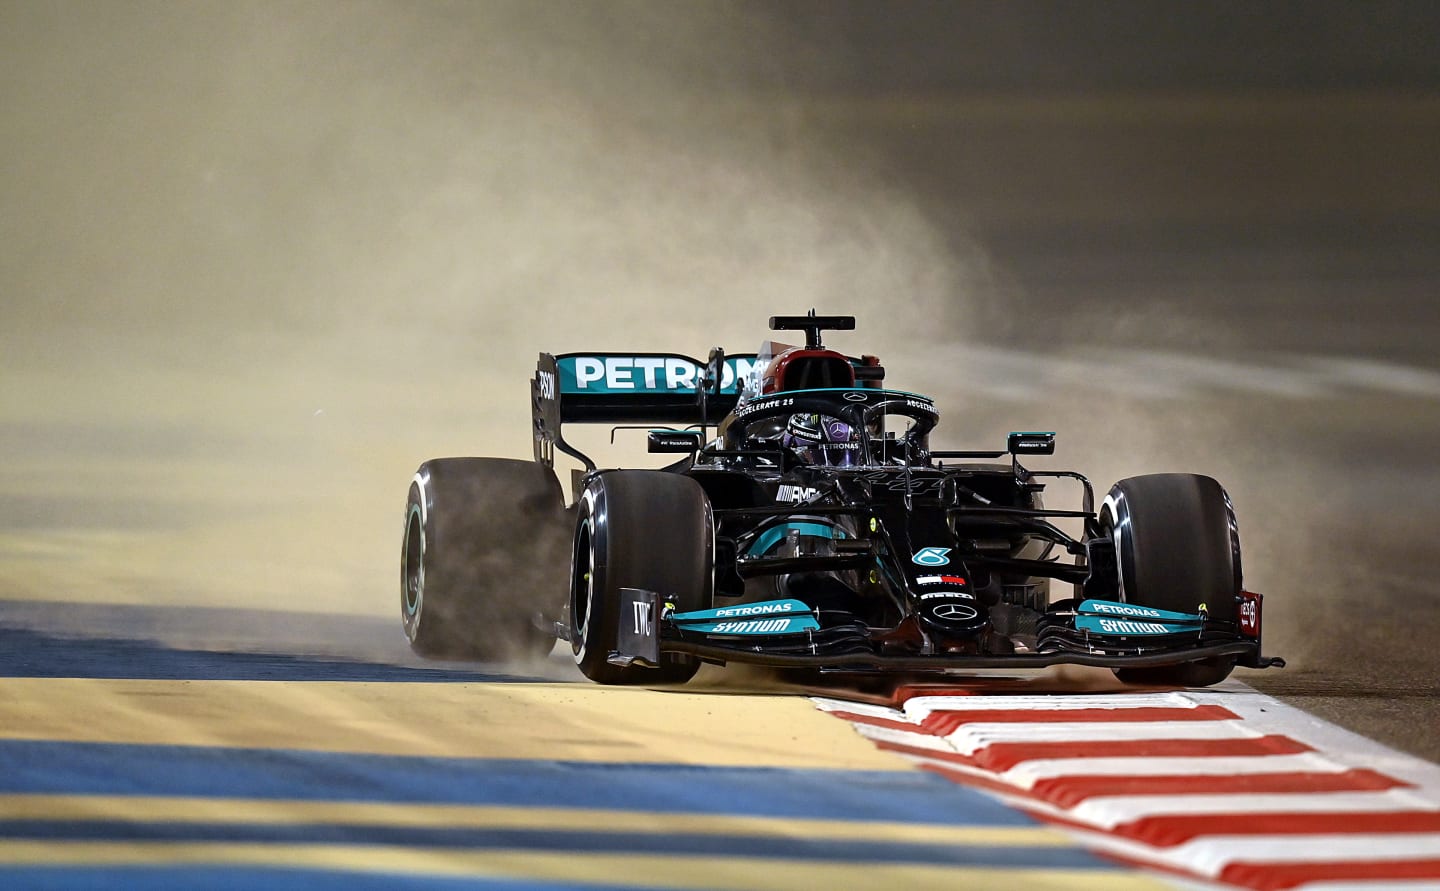 BAHRAIN, BAHRAIN - MARCH 12: Lewis Hamilton of Great Britain driving the (44) Mercedes AMG Petronas